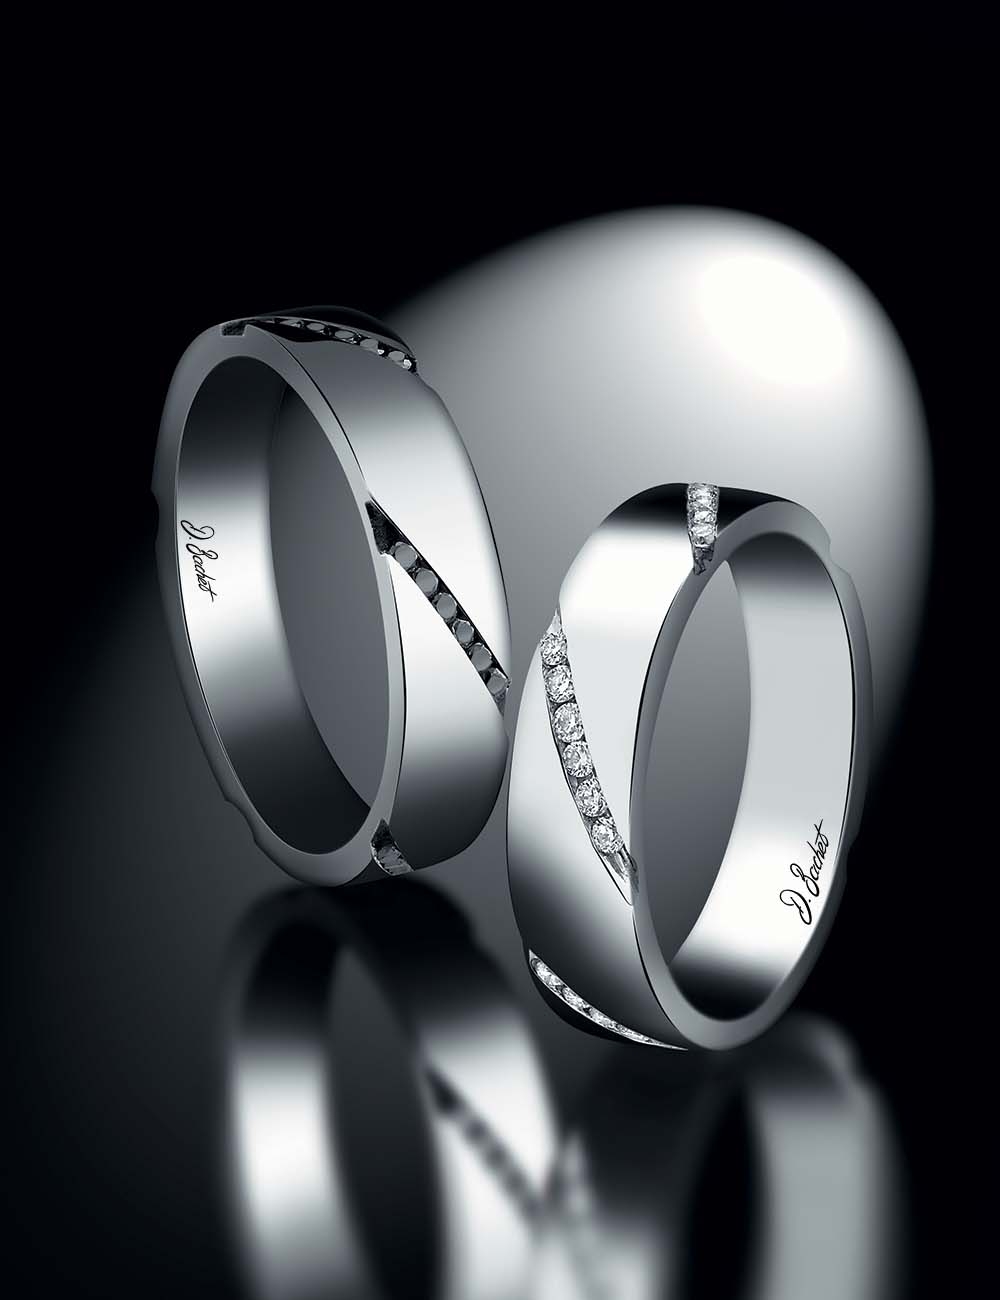 Alliance homme contemporaine avec diamants noirs sertis en diagonale, artisanat français, pour mariage moderne et élégant.